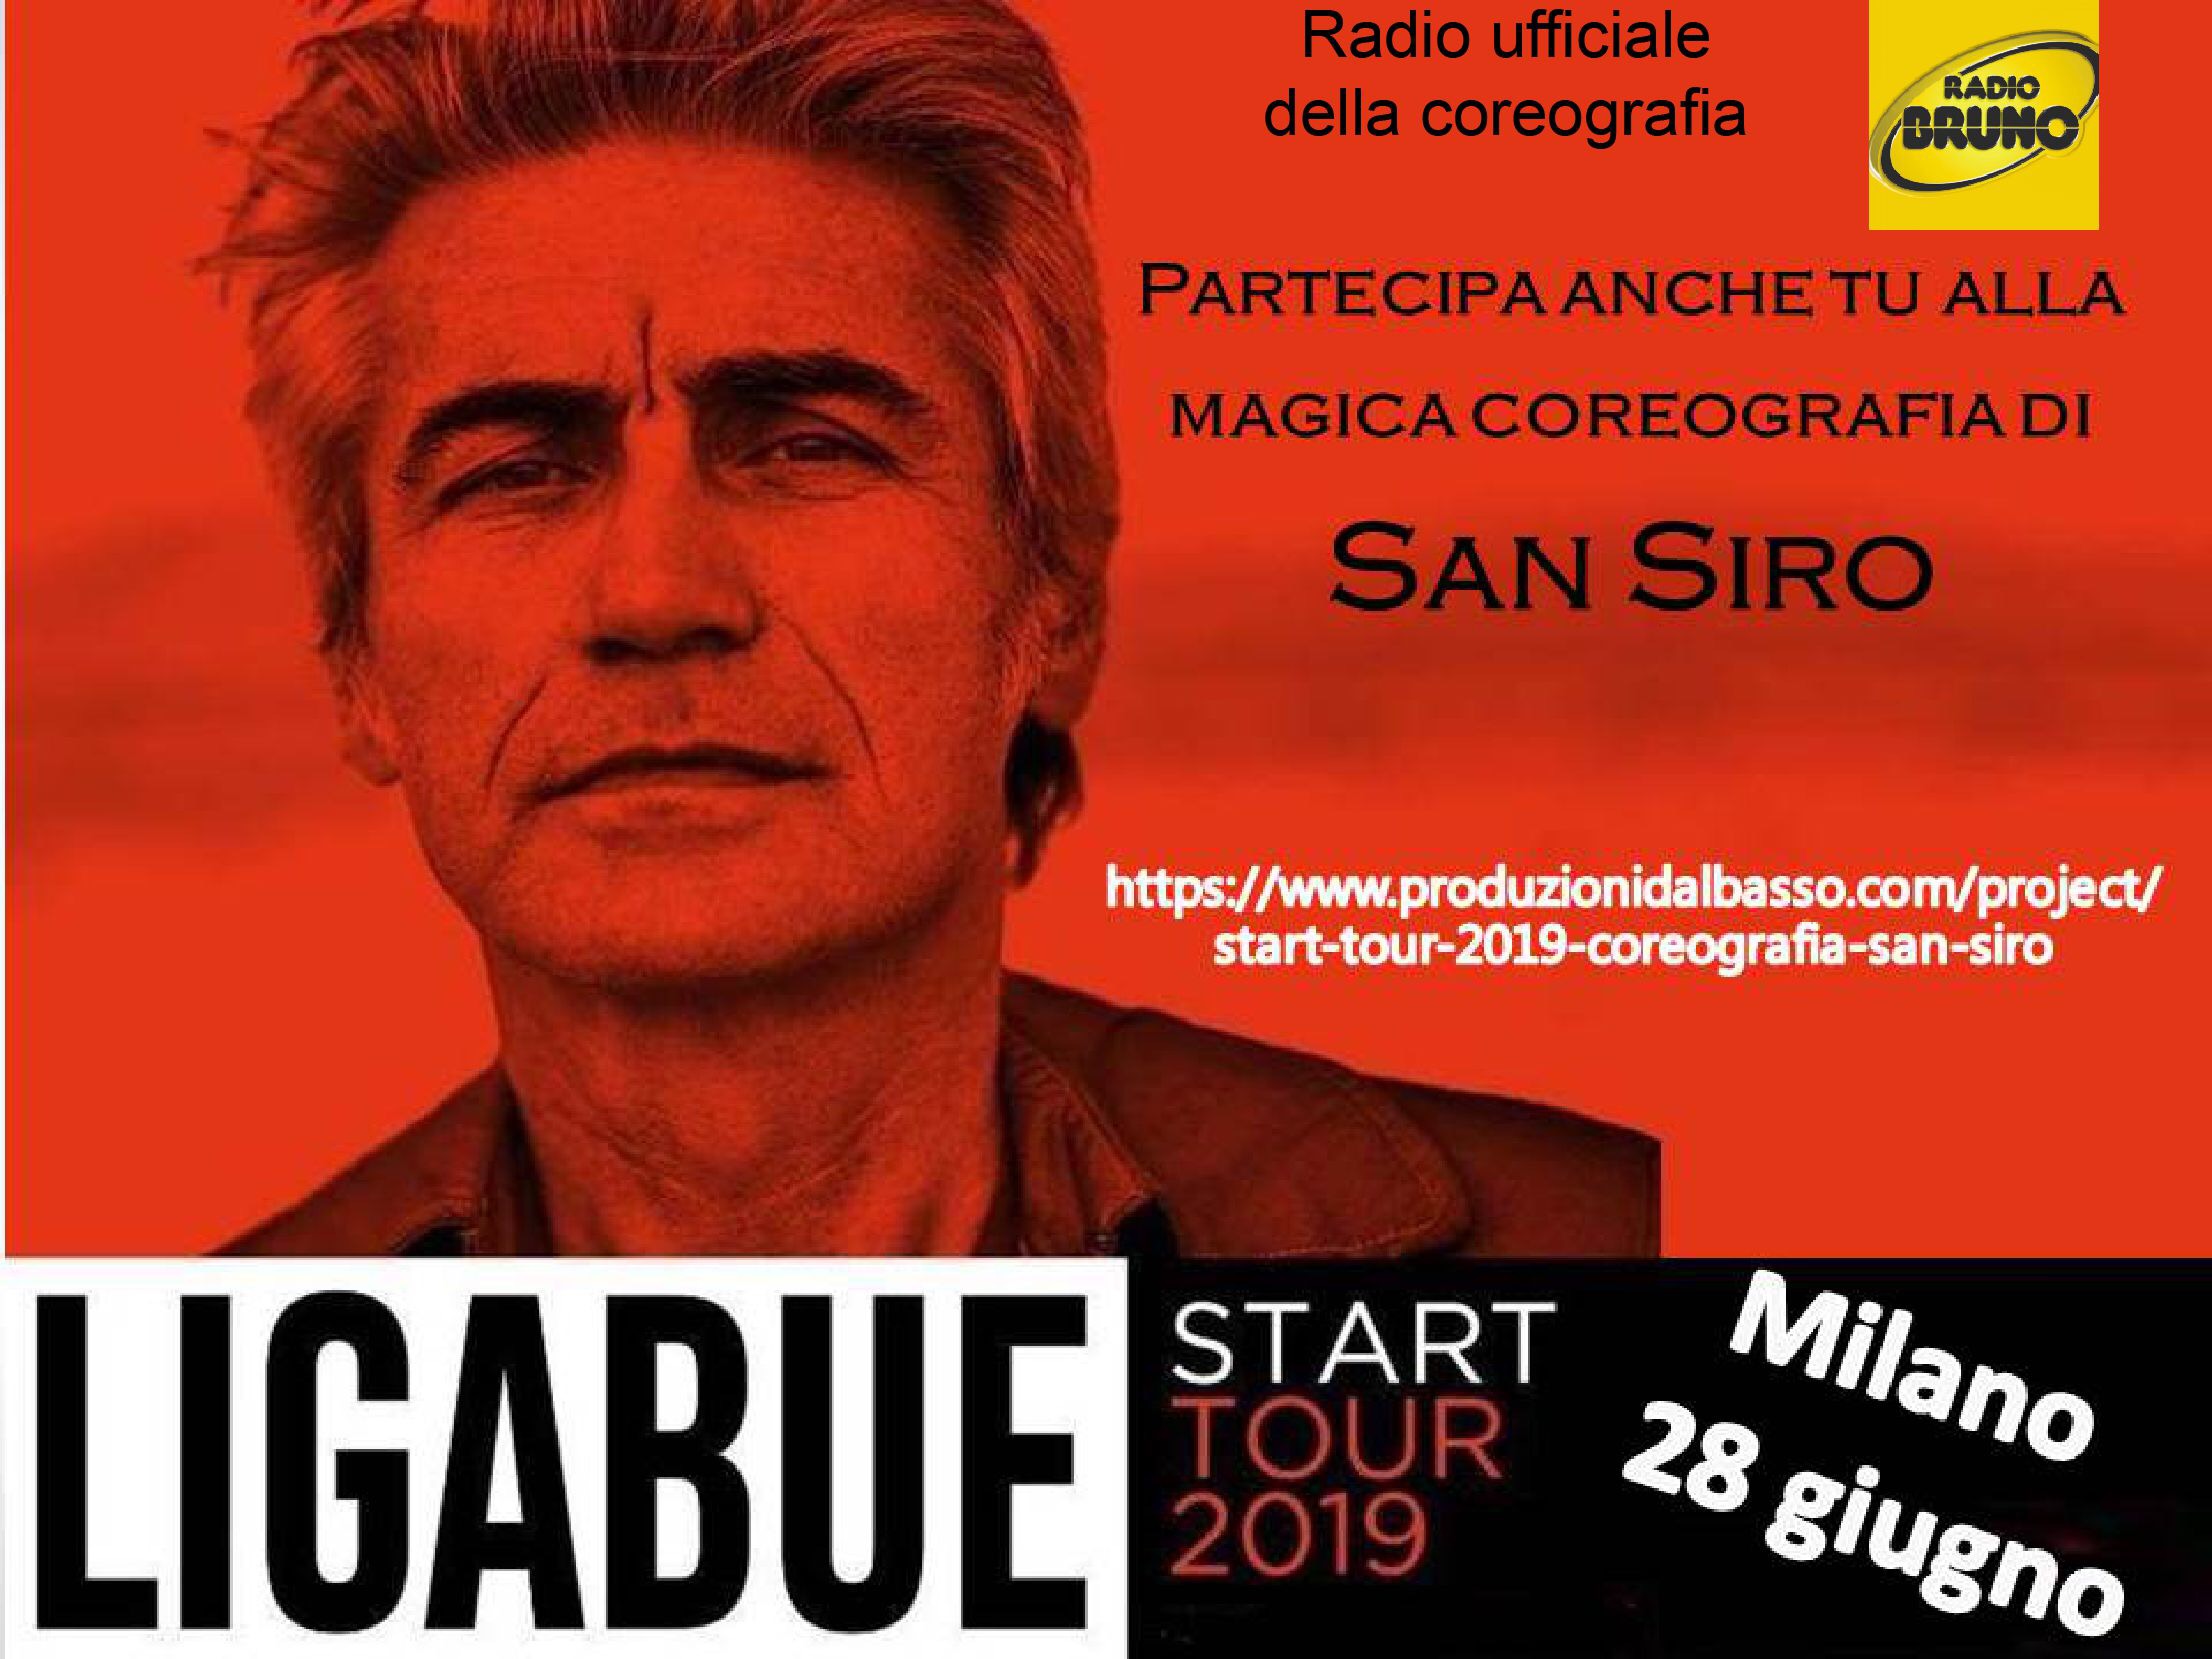 START TOUR 2019 di Ligabue - Coreografia al Concerto di San Siro